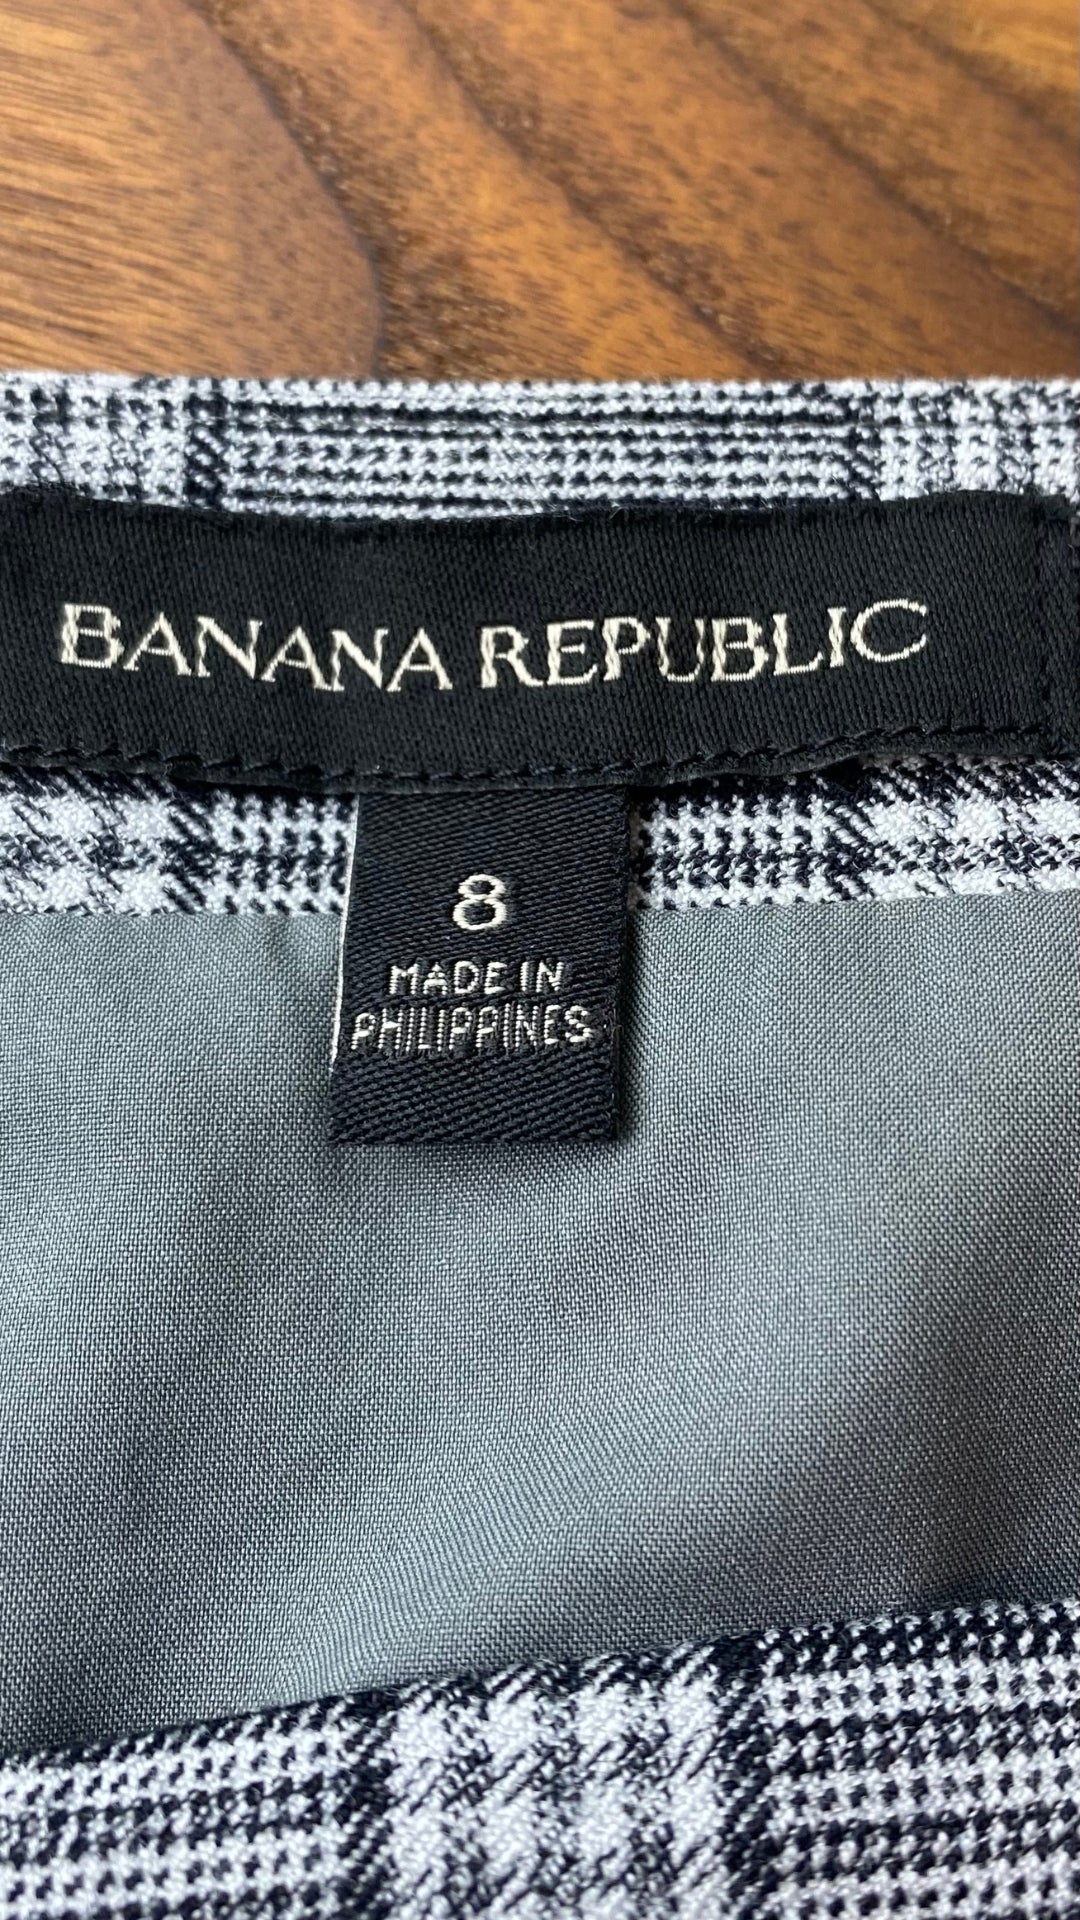 Jupe à carreaux en fin lainage gris et noir Banana Republic, taille 8. Vue de l'étiquette de marque et taille.